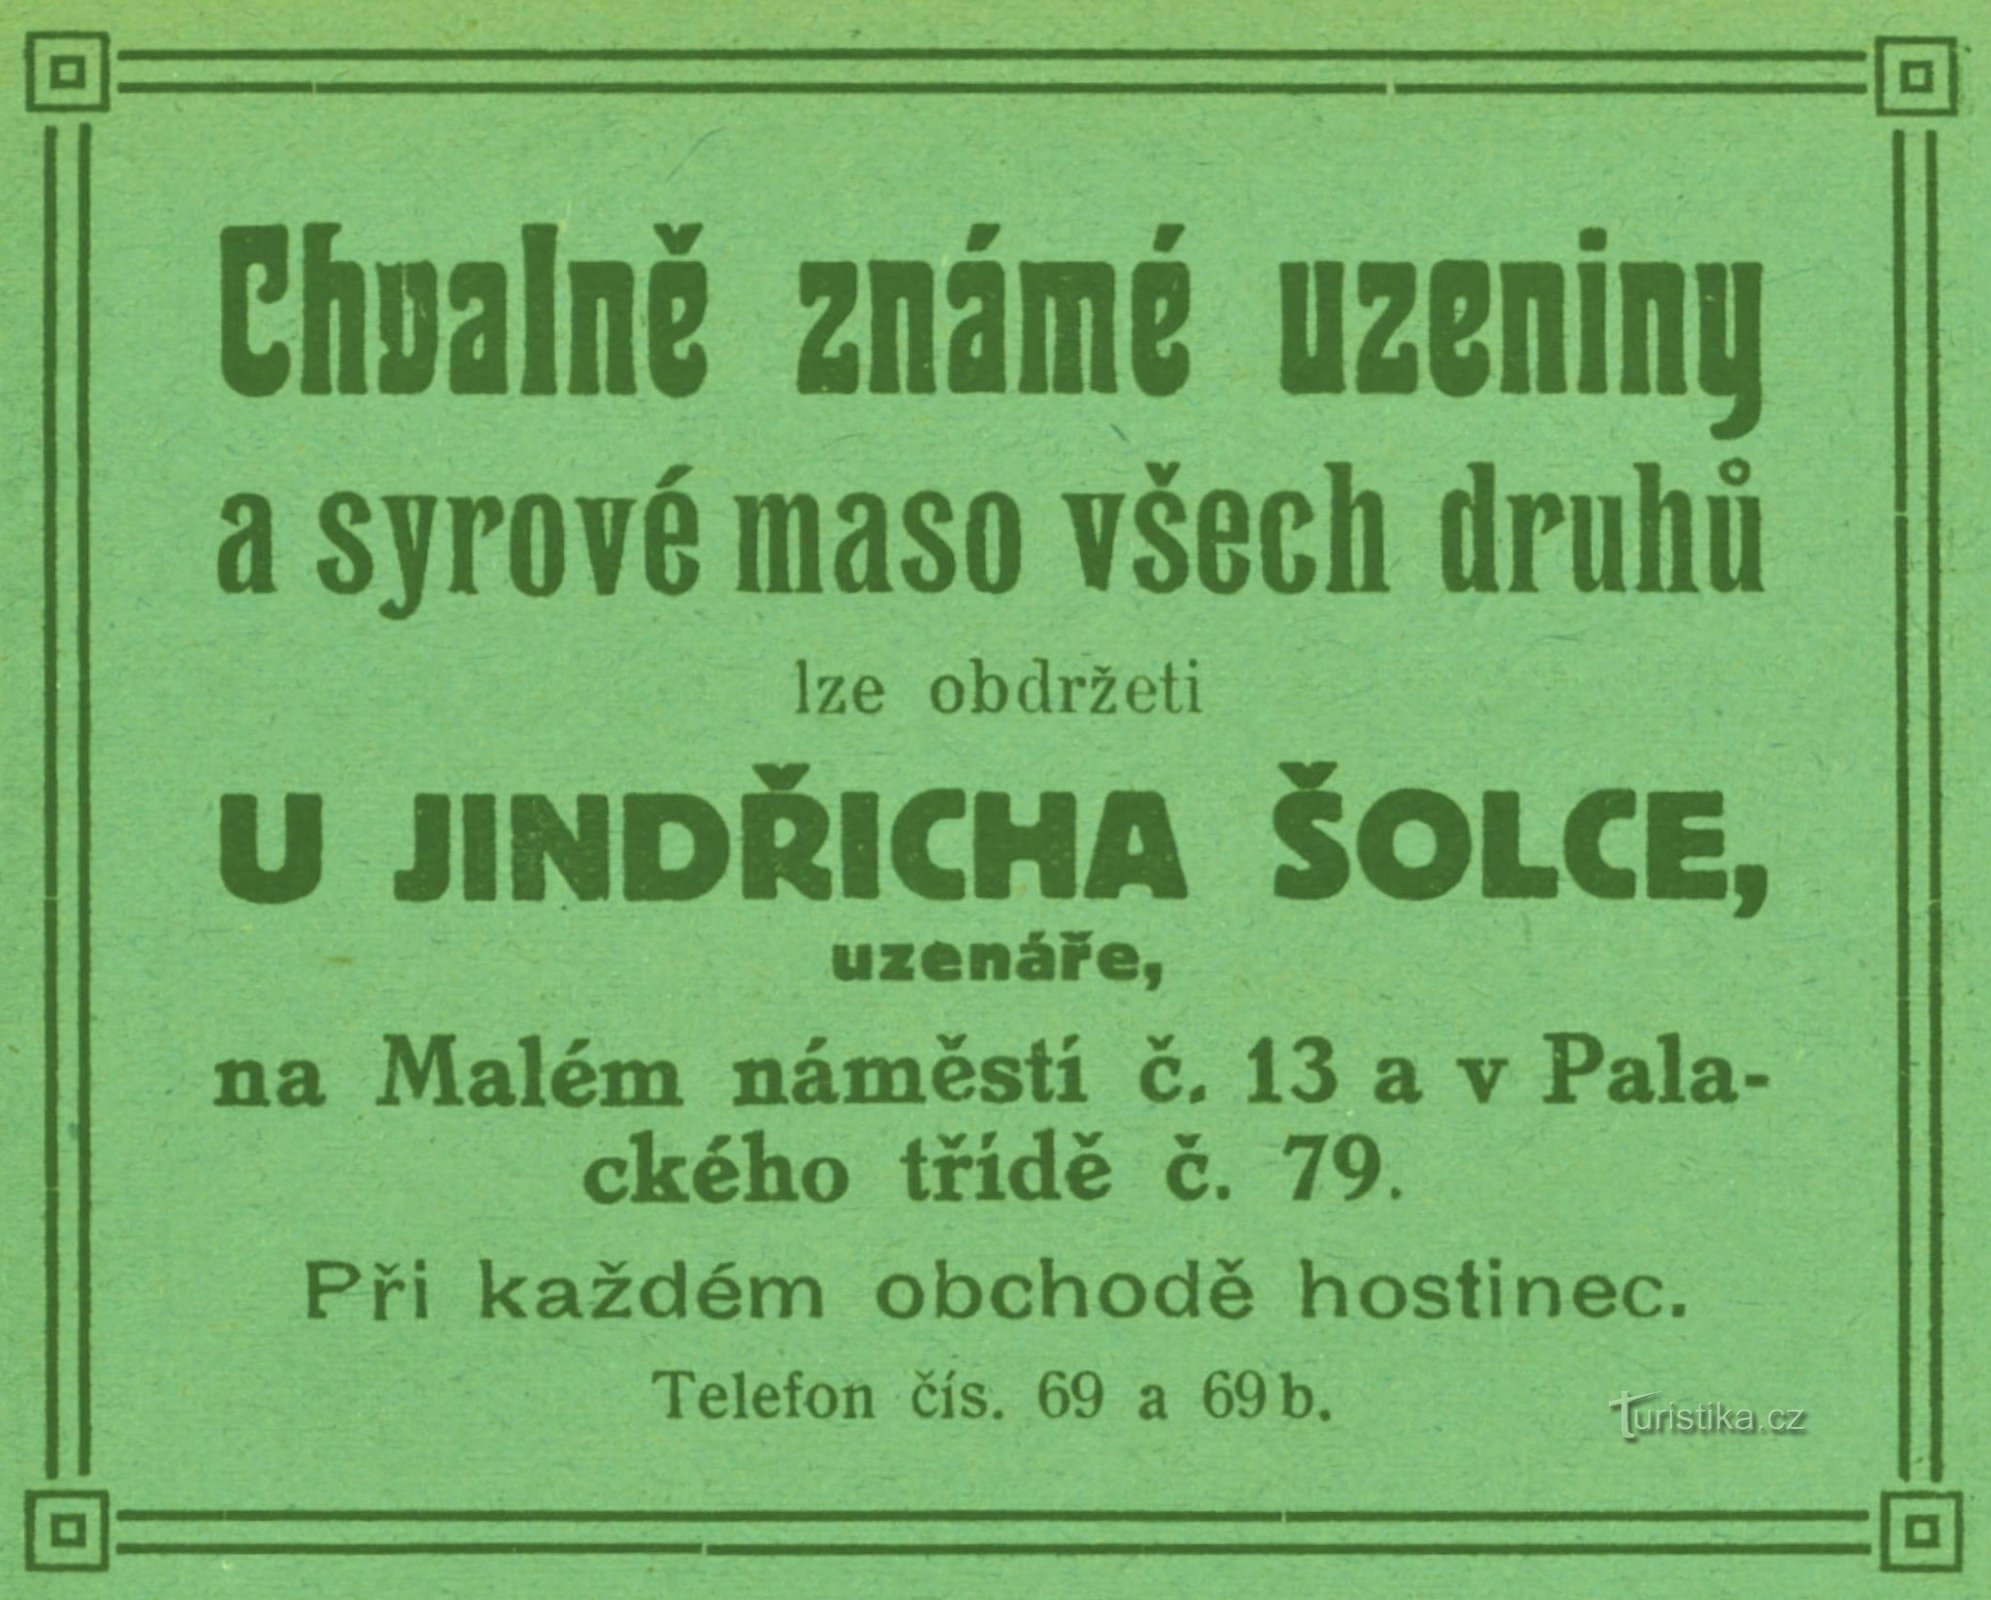 Quảng cáo cửa hàng thịt của Jindřich Šolec từ năm 1911